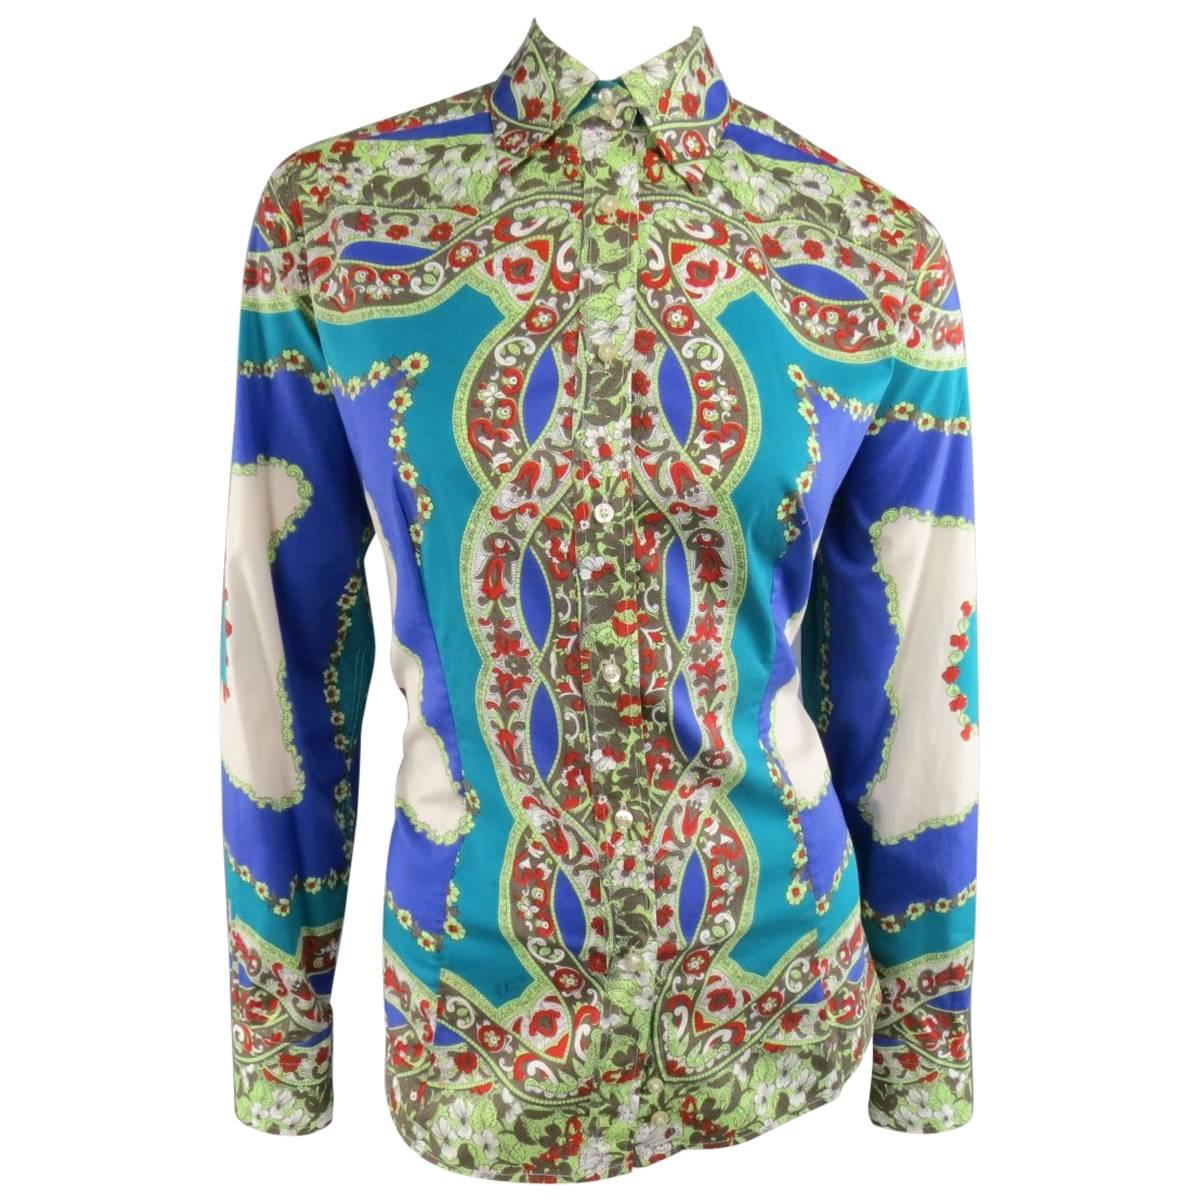 ETRO Shirt, Top, Blouse - Size 14 Blue & Green Floral Bandana Print Cotton